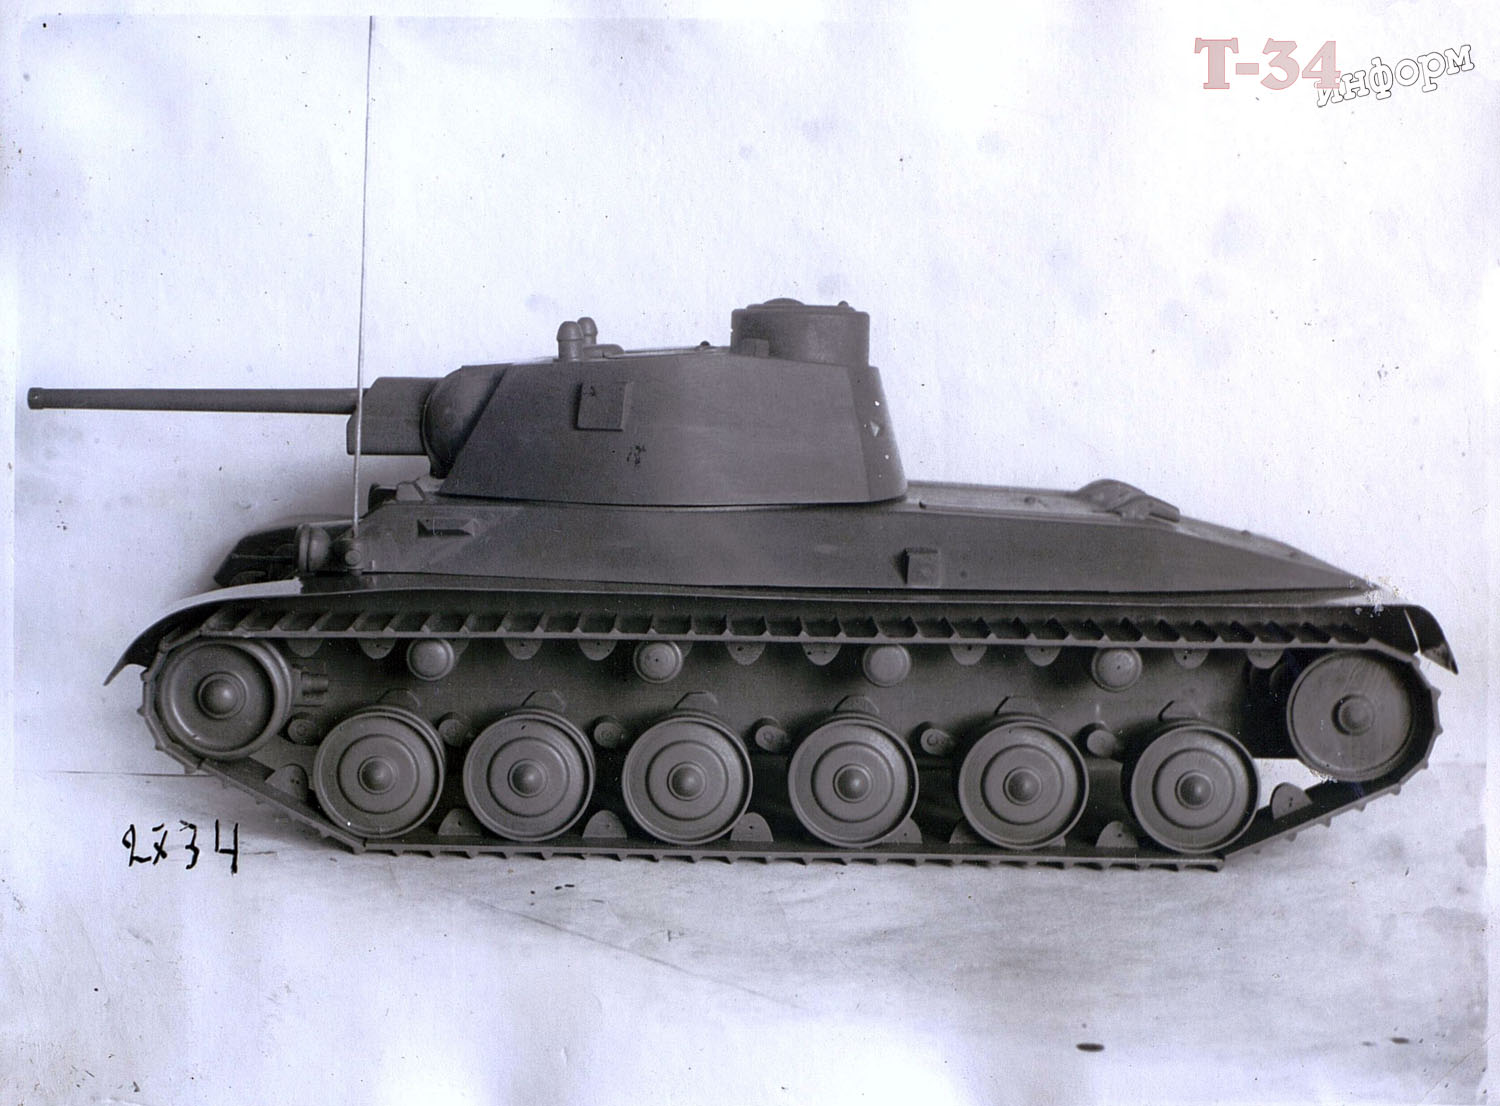 Т 43 средний танк. А-43 (Т-34м). Т-34м 1941. А-43 танк. Т-34 С торсионной подвеской.